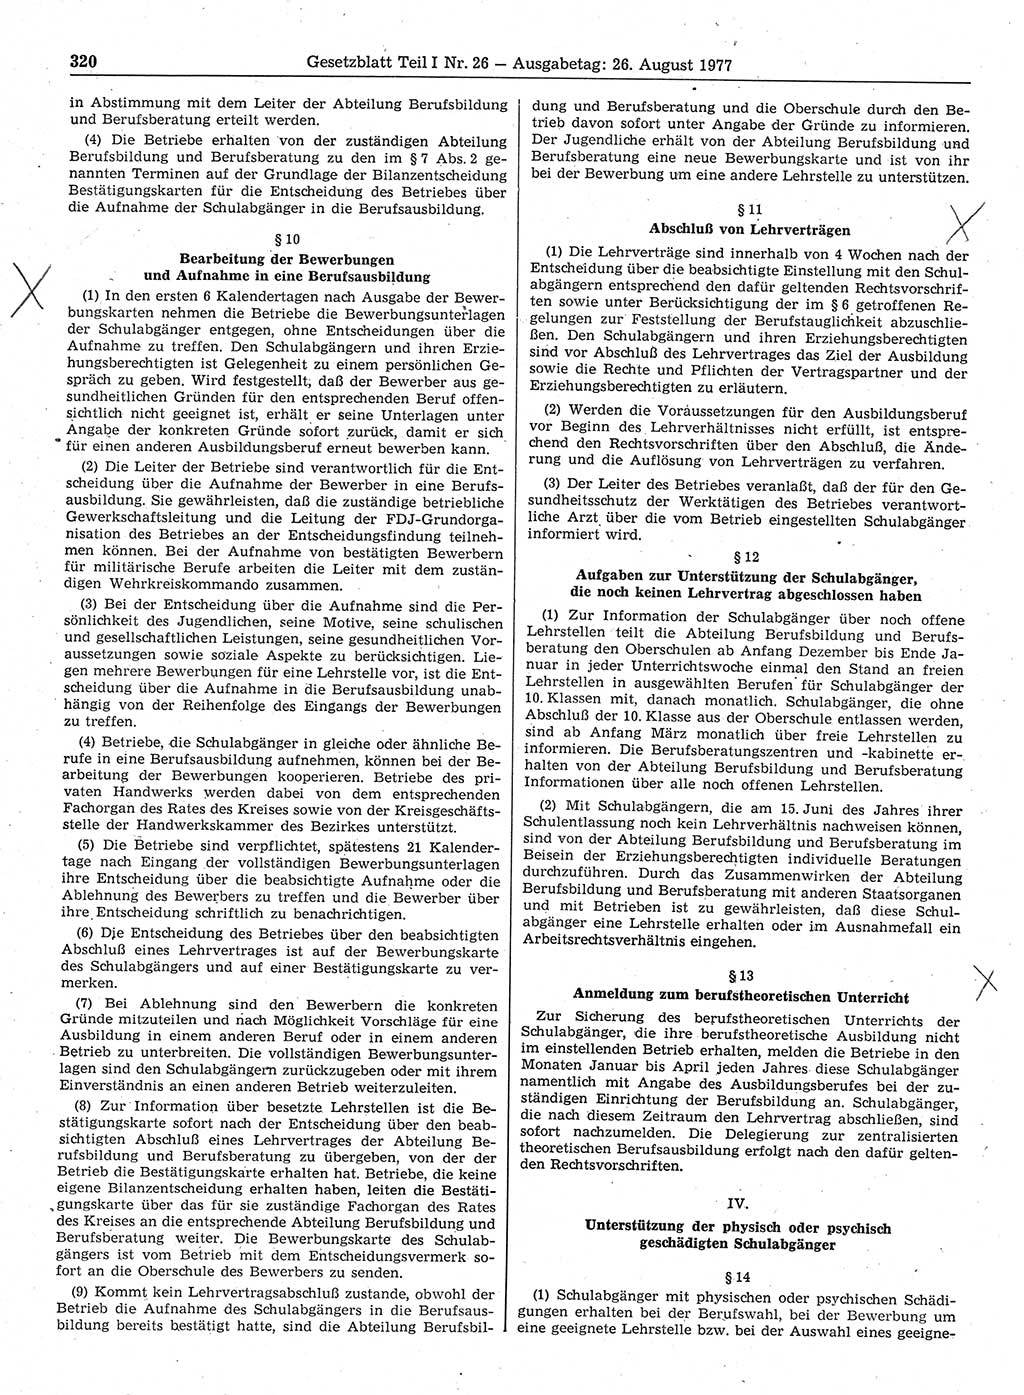 Gesetzblatt (GBl.) der Deutschen Demokratischen Republik (DDR) Teil Ⅰ 1977, Seite 320 (GBl. DDR Ⅰ 1977, S. 320)